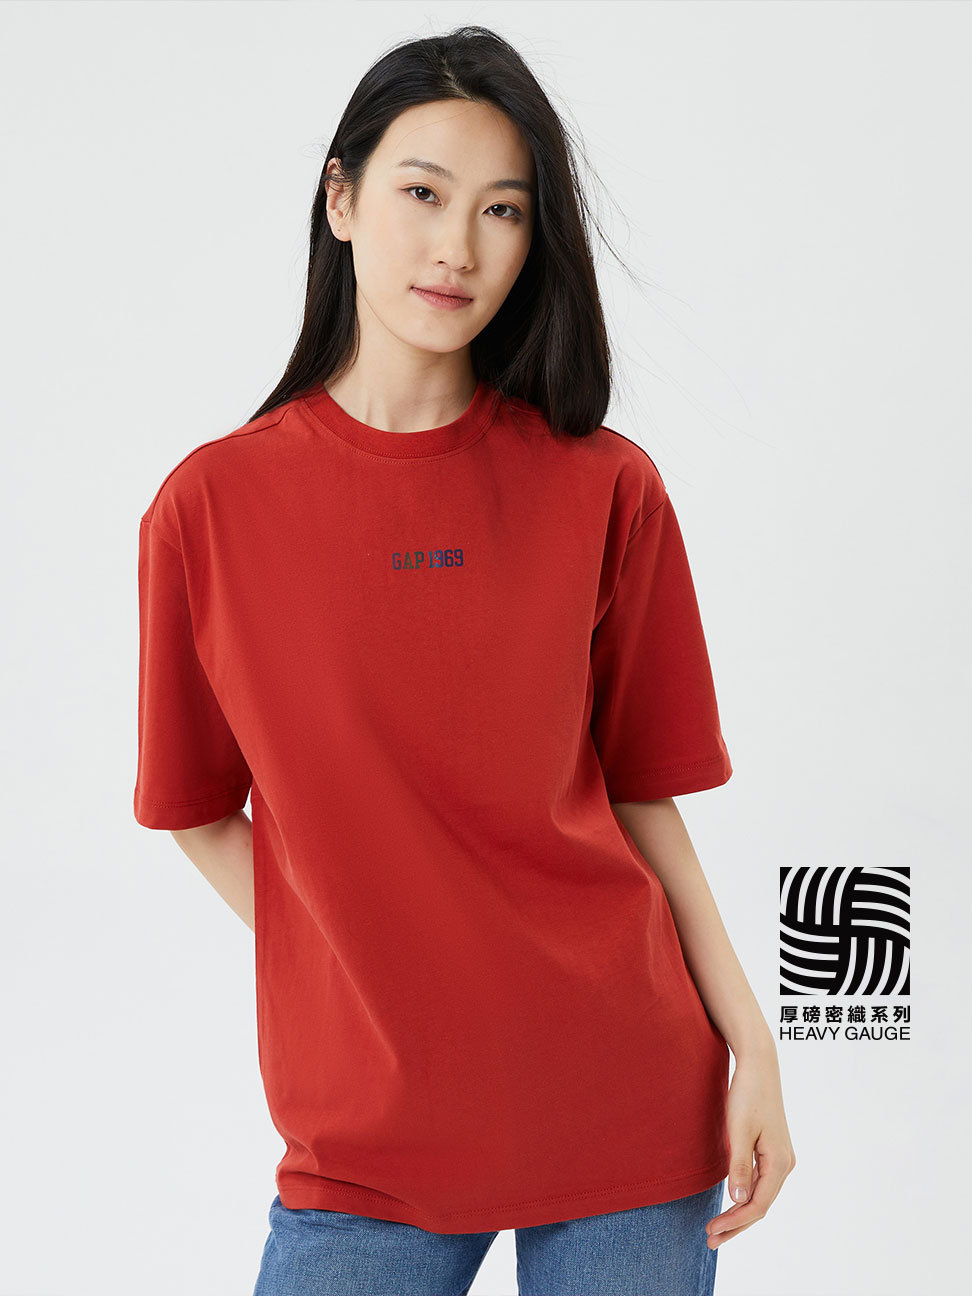 男女同款|Logo純棉短袖T恤-橘紅色